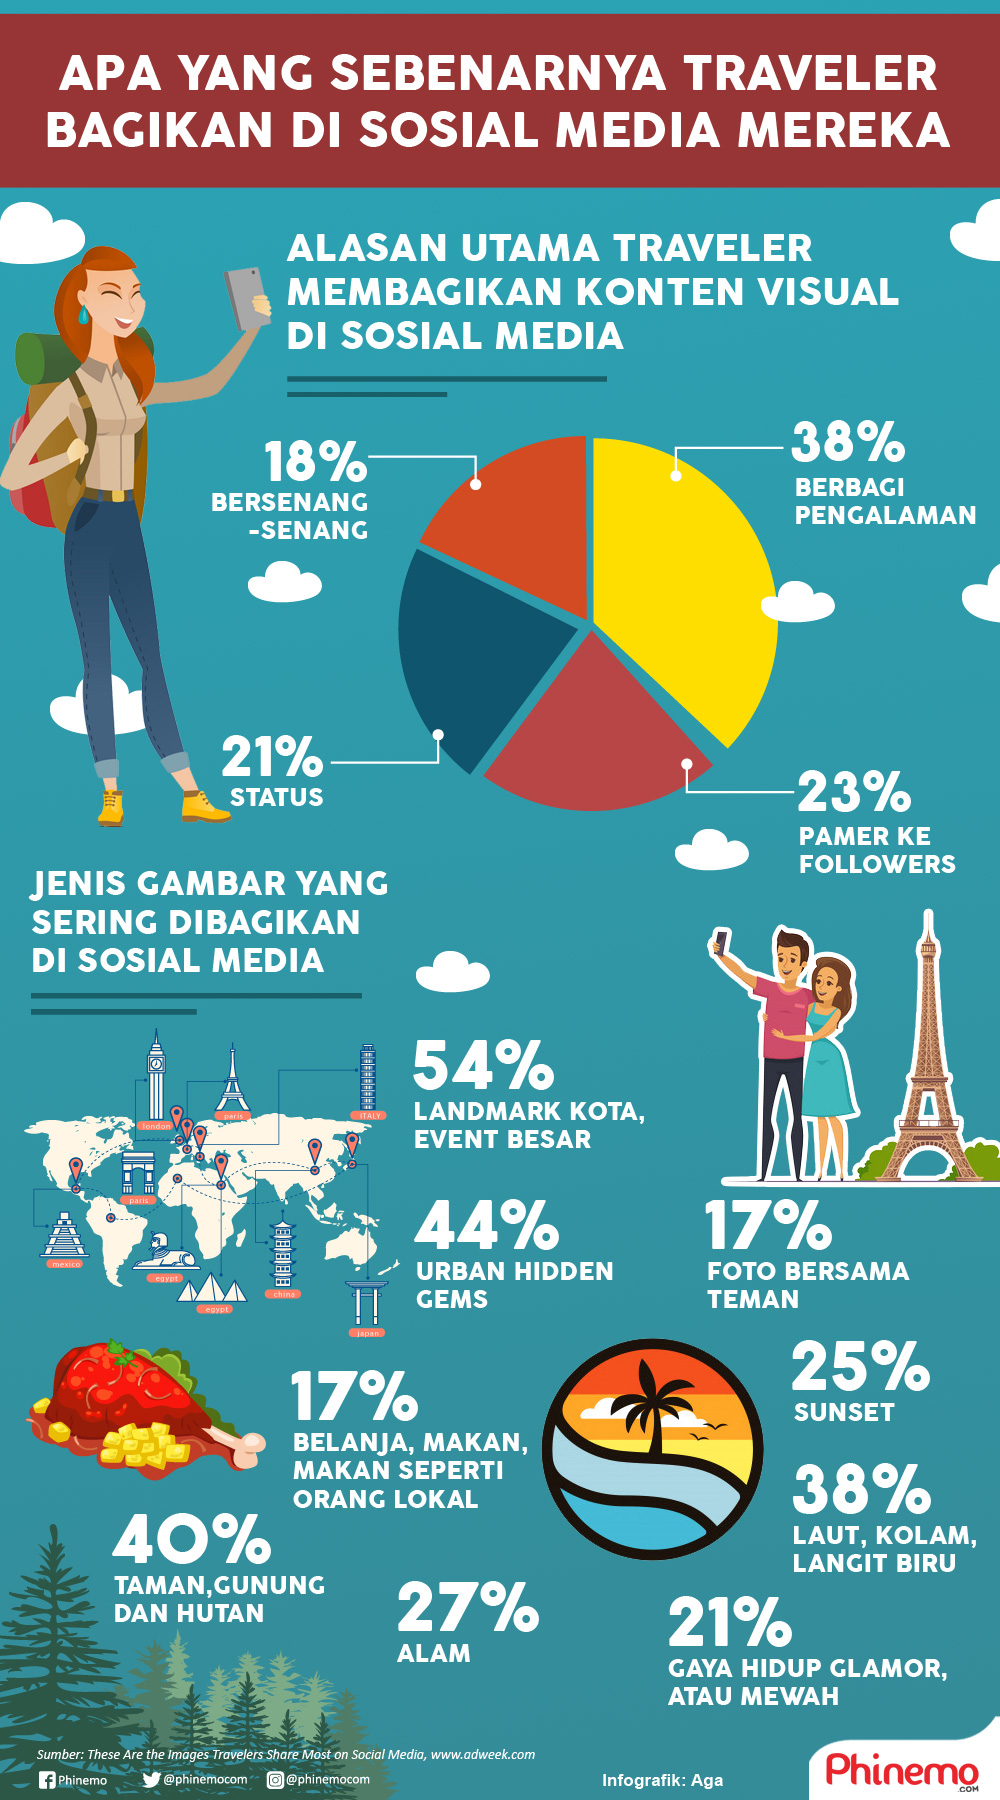 Infografik Mencengangkan, Inilah yang Sebenarnya Dibagikan Oleh Traveler di Sosial Media